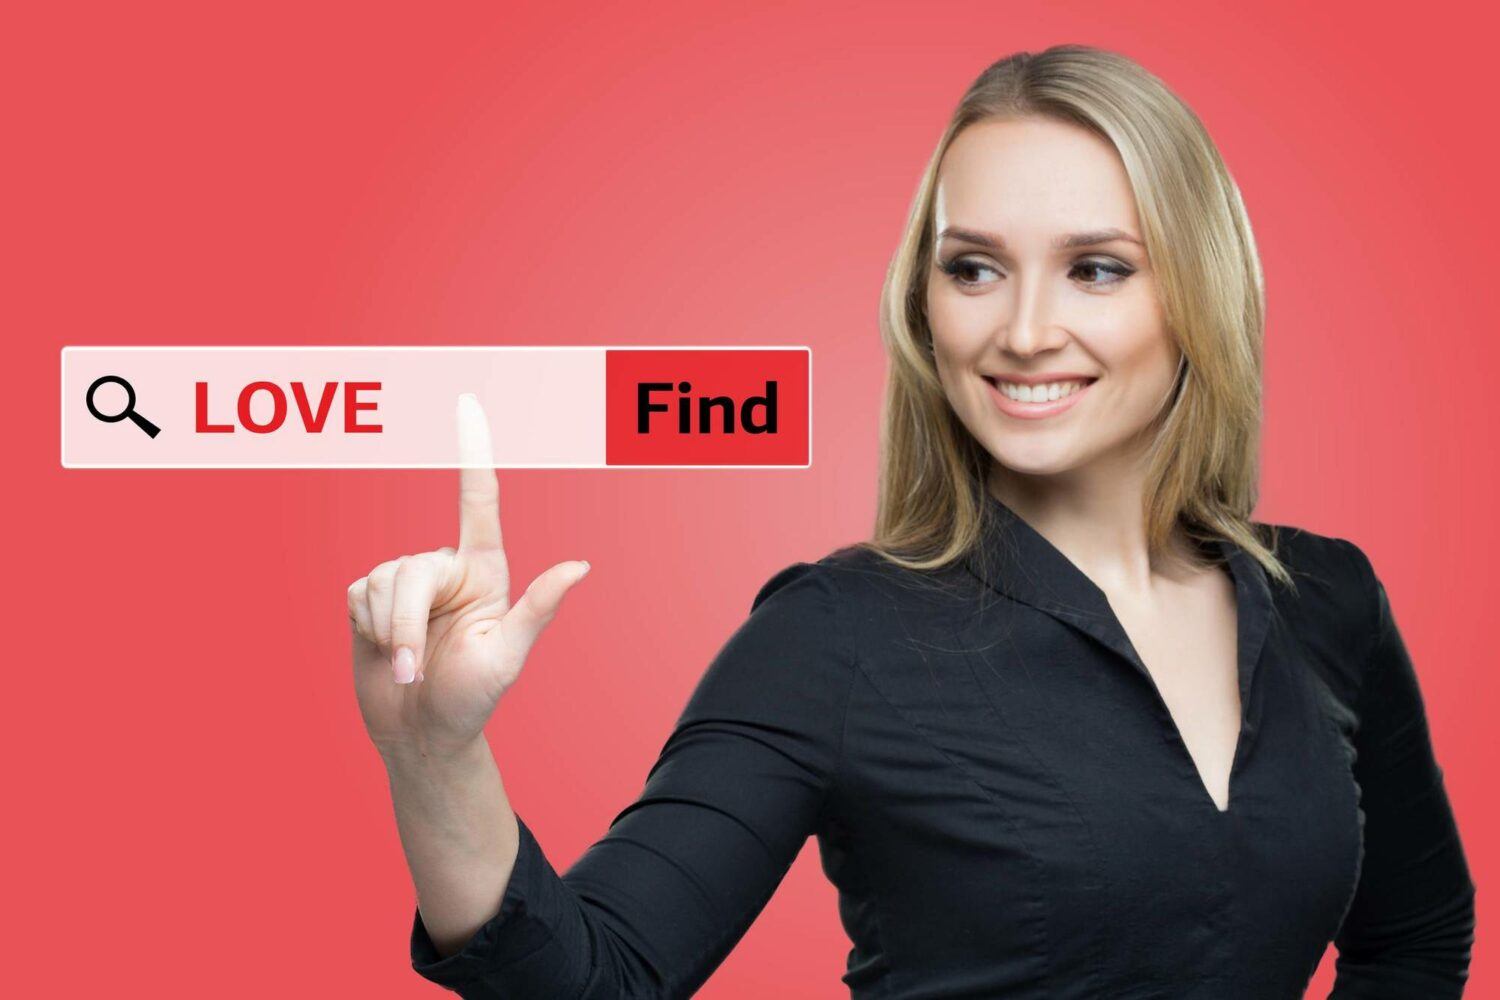 Site de rencontre: célibataire cherche l'amour en ligne - L'Express Styles